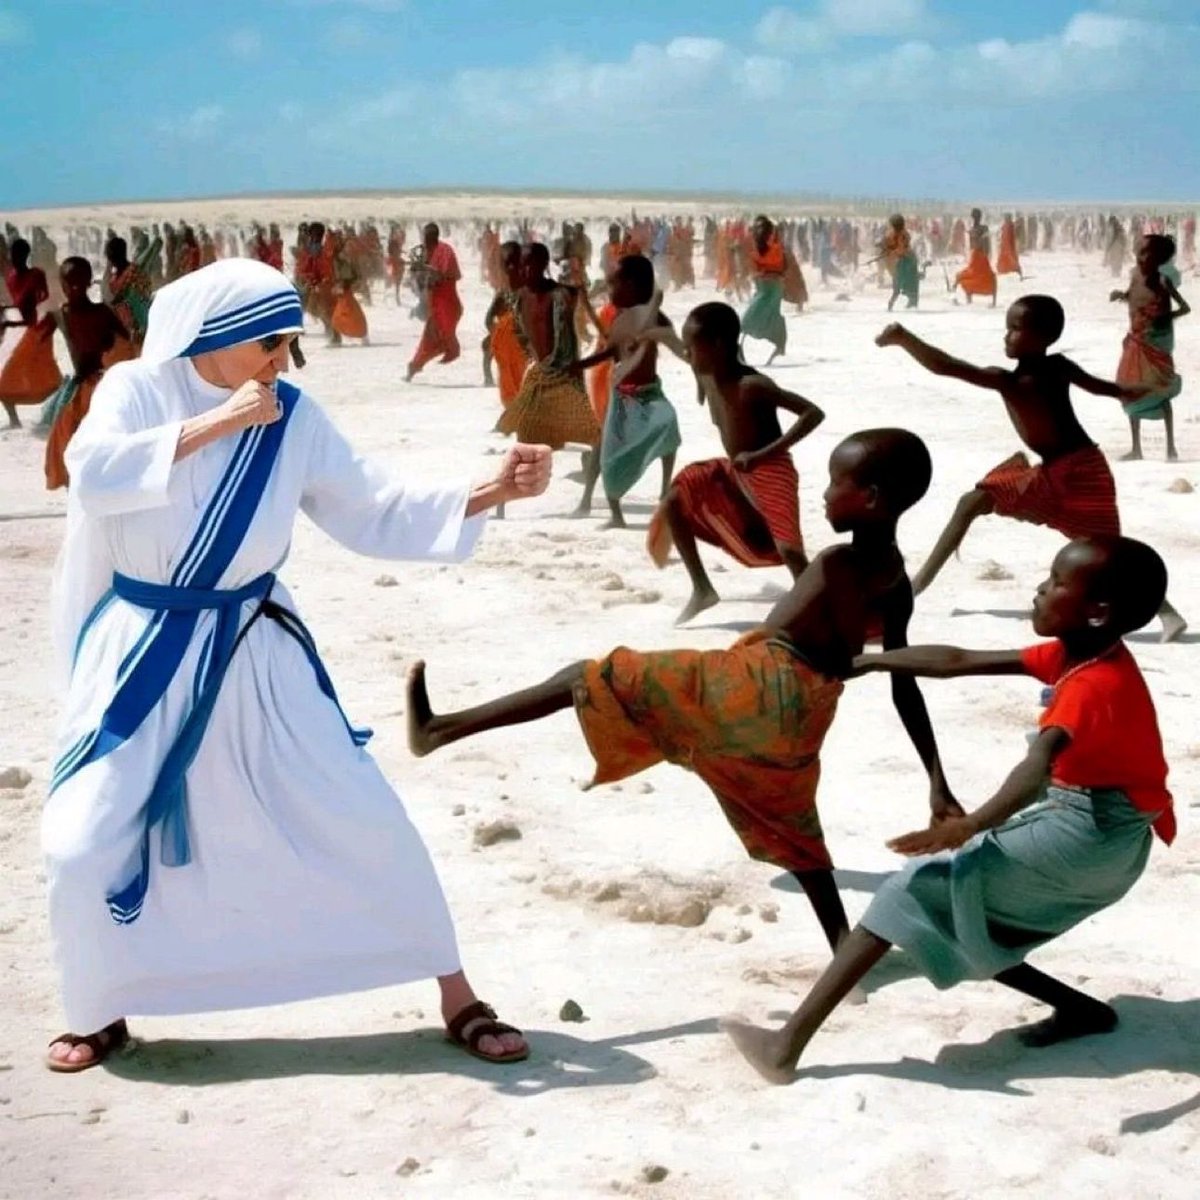 Quand on demande à une IA générative de réaliser une image de Mère Teresa luttant contre la pauvreté (🙏 @AlainGoudey pour l'exemple). Nous sommes très, très loin, de l'intelligence humaine, naturellement.